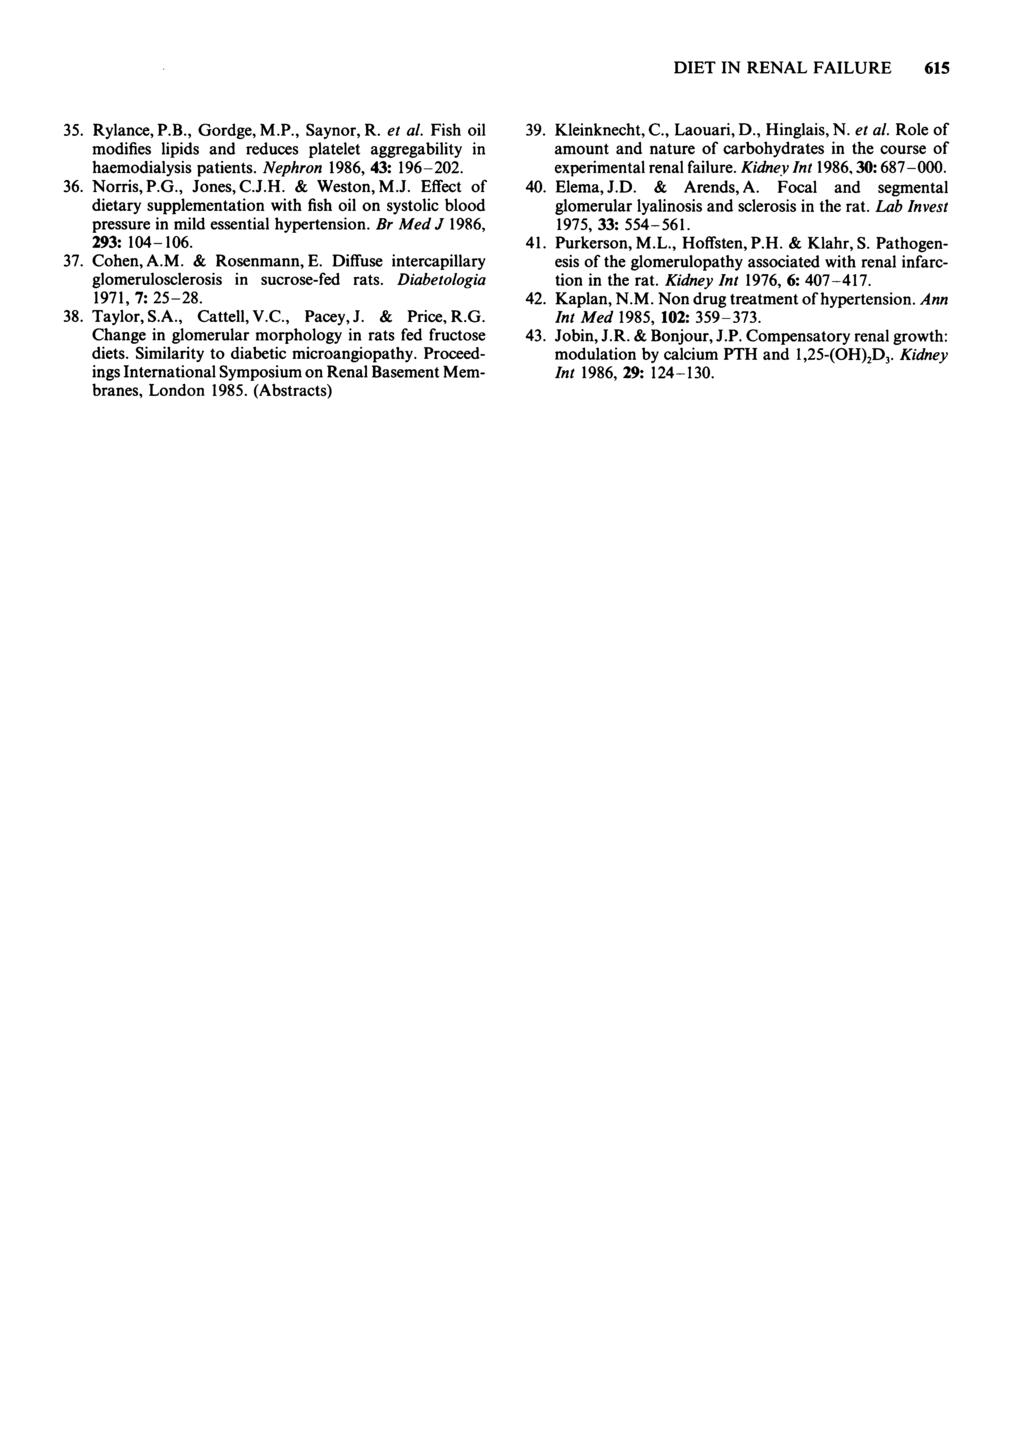 35. Rylance, P.B., Gordge, M.P., Saynor, R. et al. Fish oil modifies lipids and reduces platelet aggregability in haemodialysis patients. Nephron 1986, 43: 196-202. 36. Norris, P.G., Jones, C.J.H.